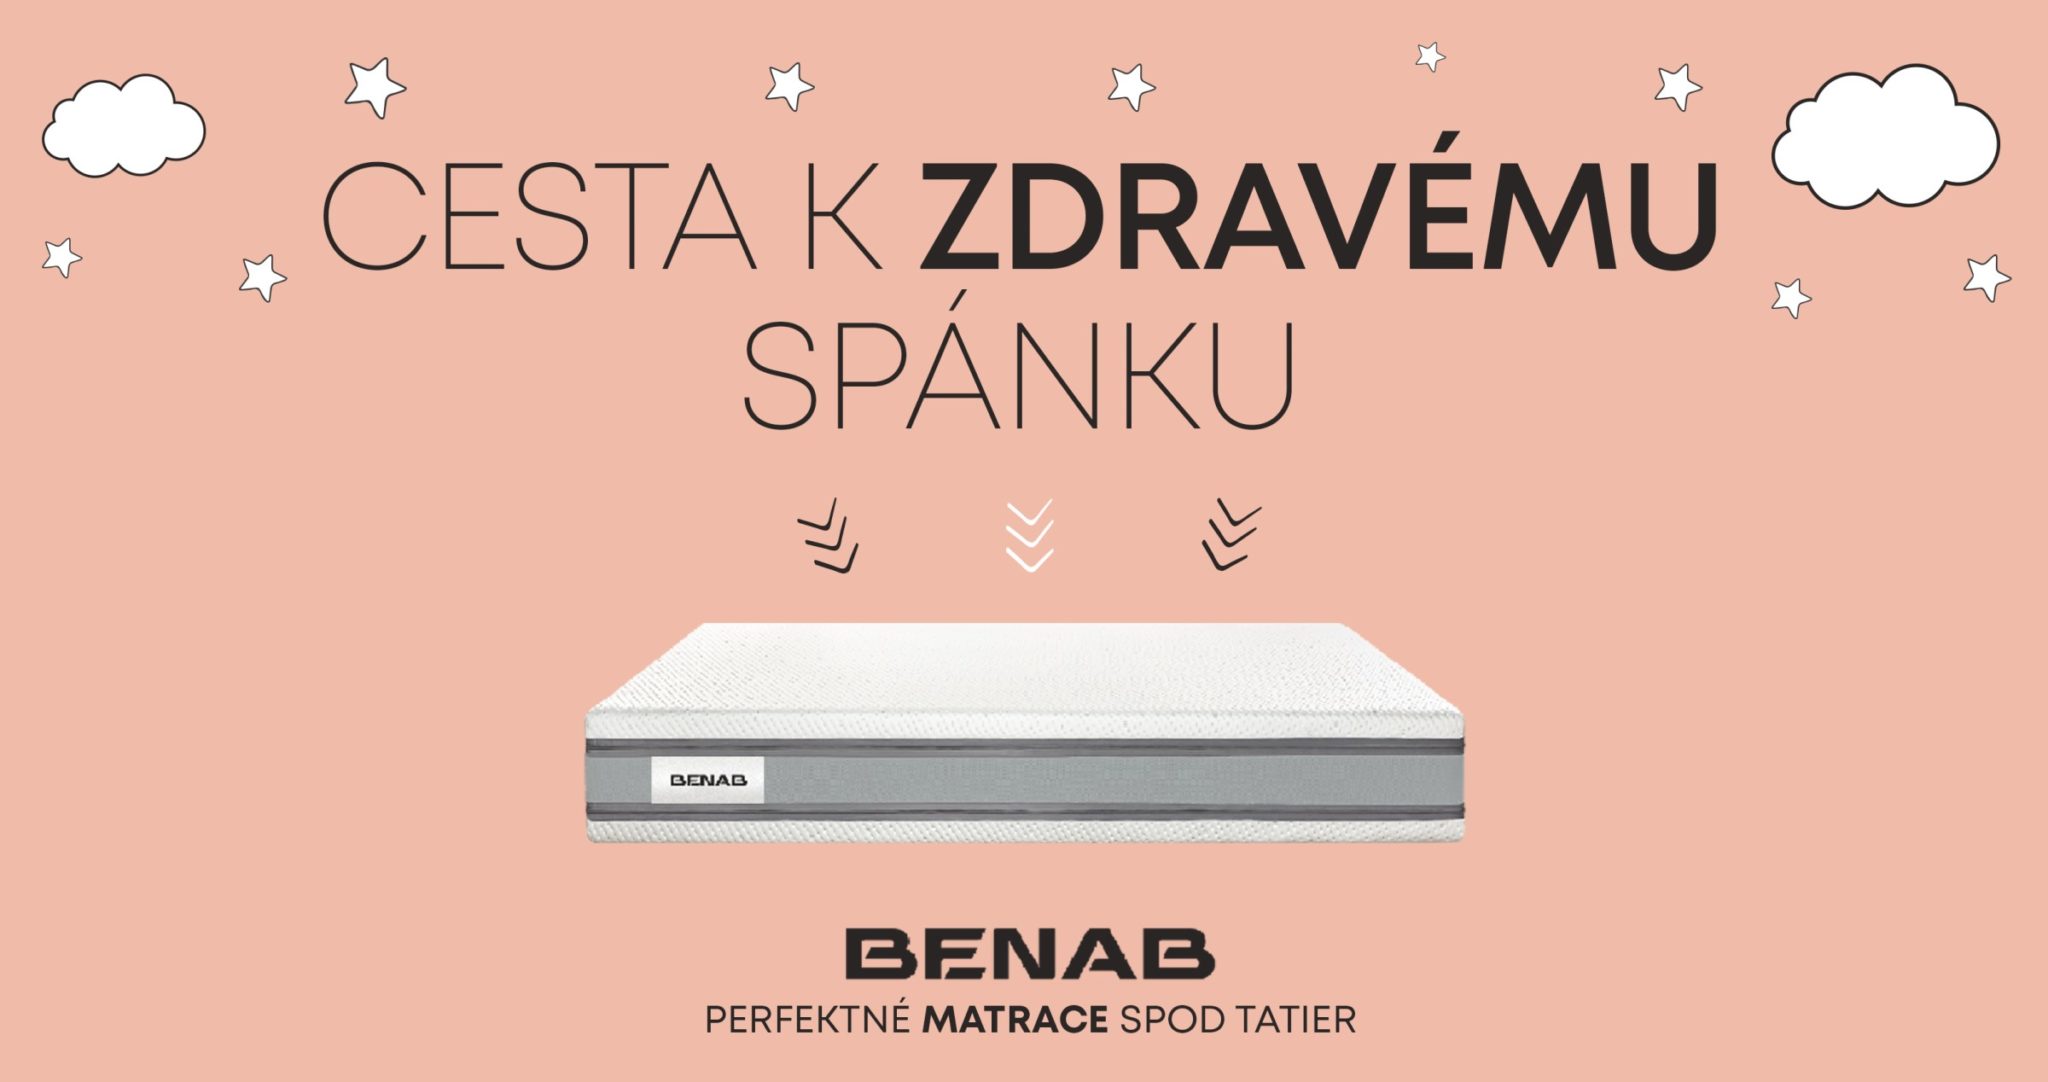 Slovenské matrace benab, cesta k zdravému spánku